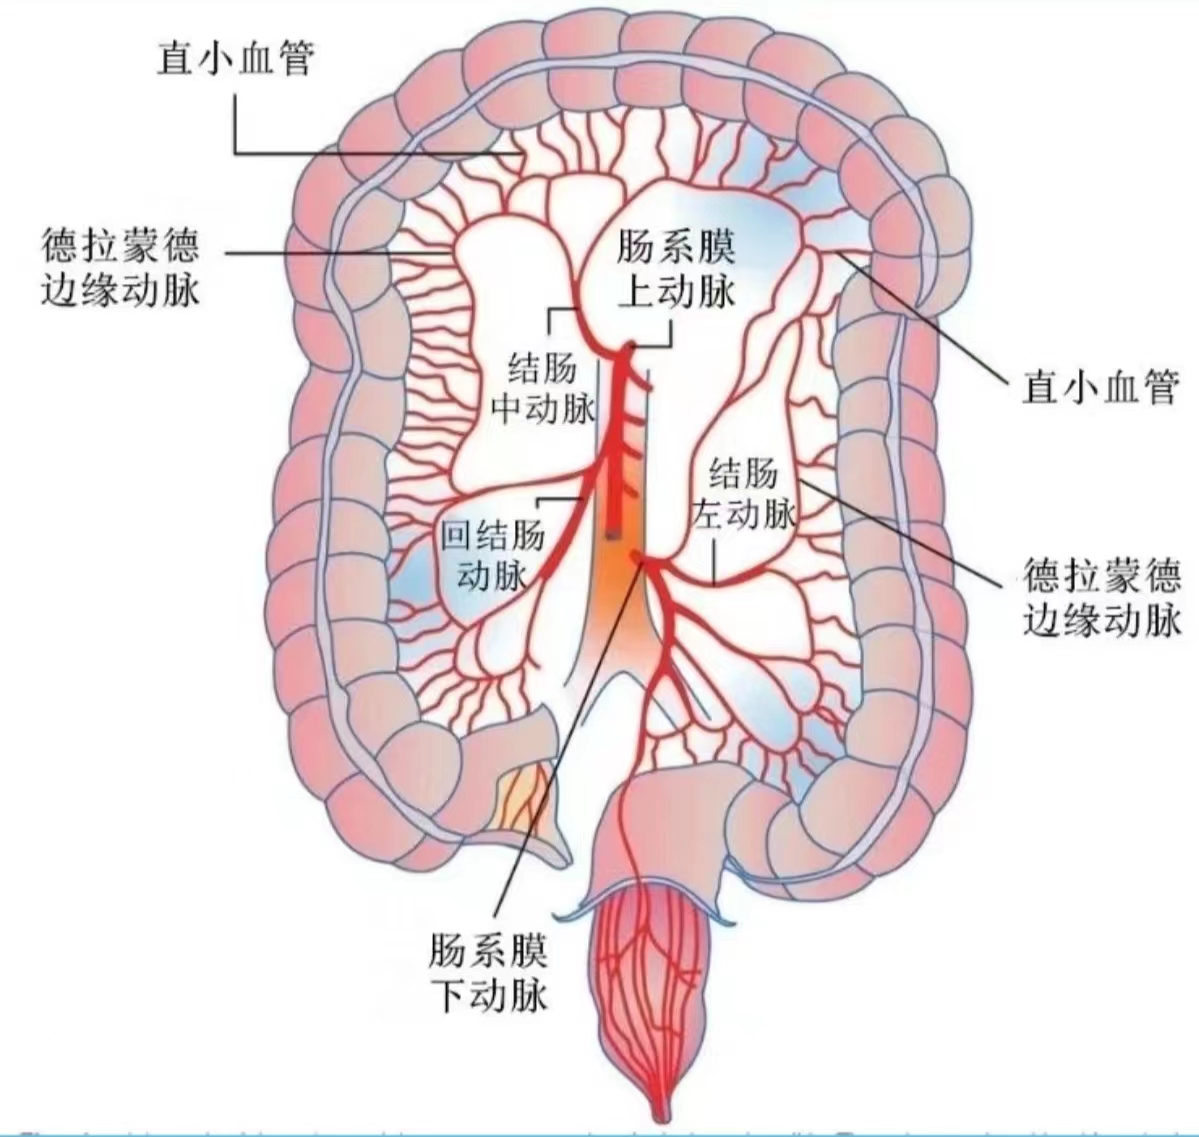 肠系膜淋巴你了解多少?